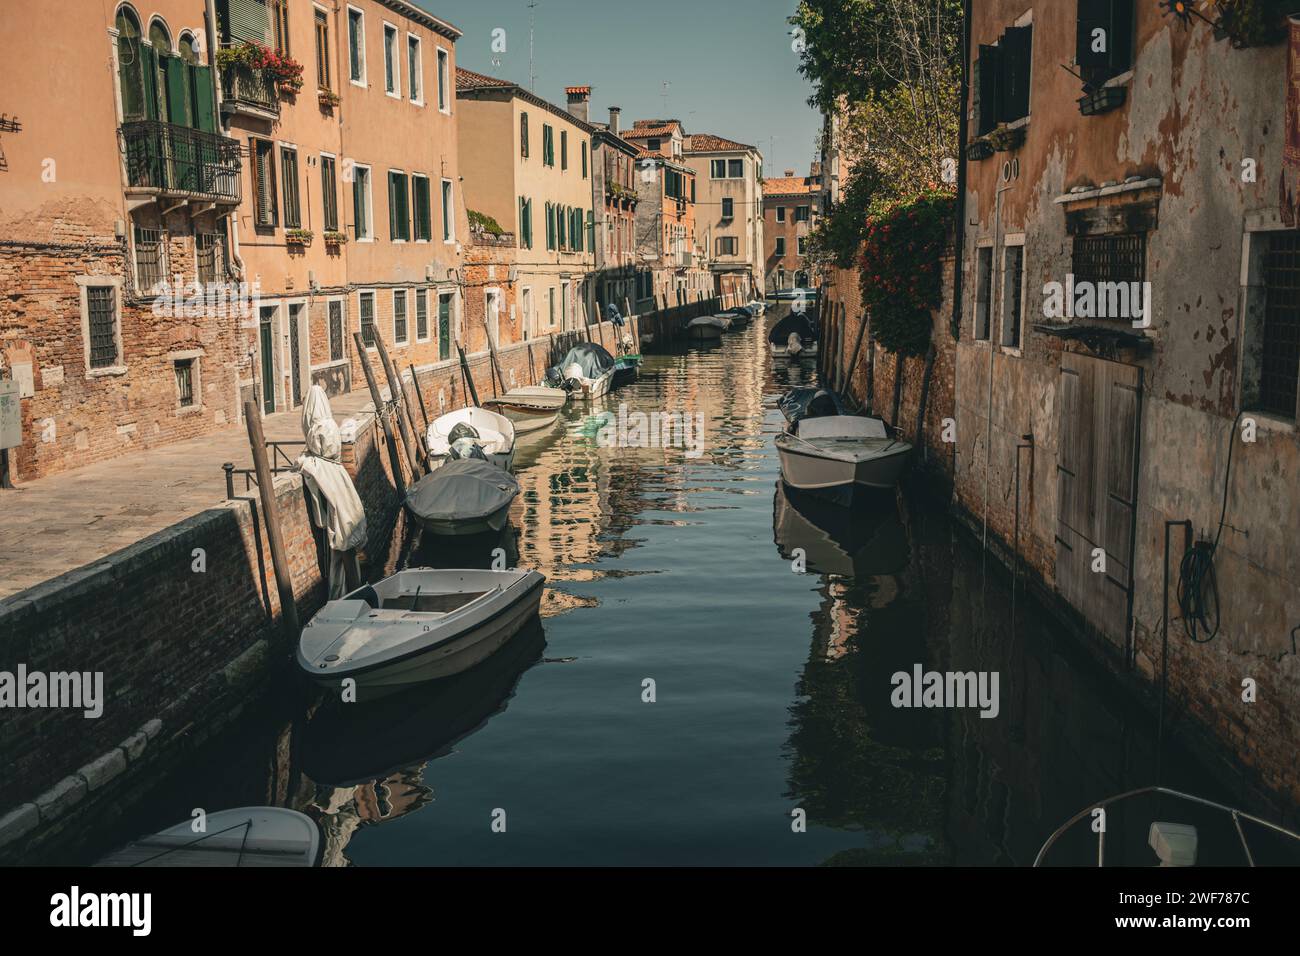 Le barche ormeggiate fiancheggiano un tranquillo canale residenziale circondato da tradizionali case veneziane in una giornata di sole. Foto Stock